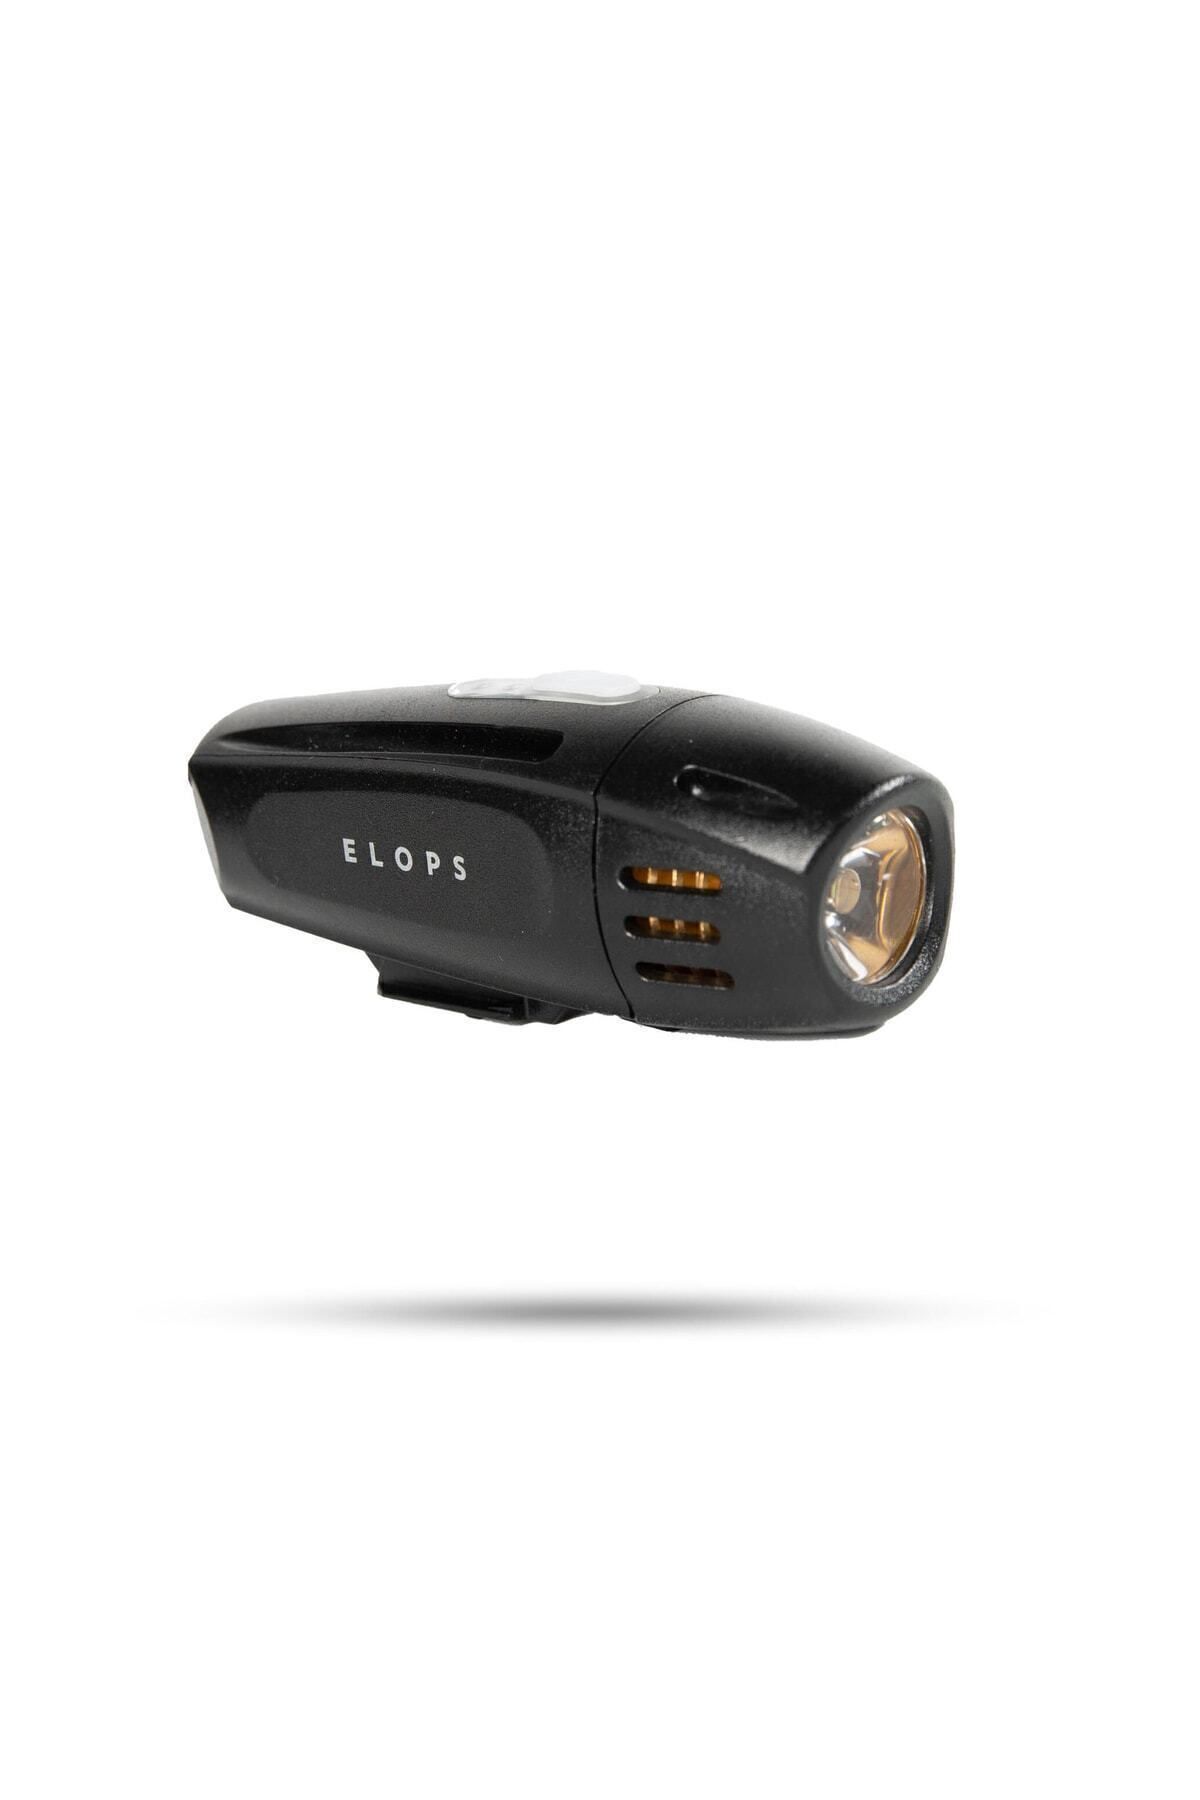 USB-освещение Decathlon Elops 337938